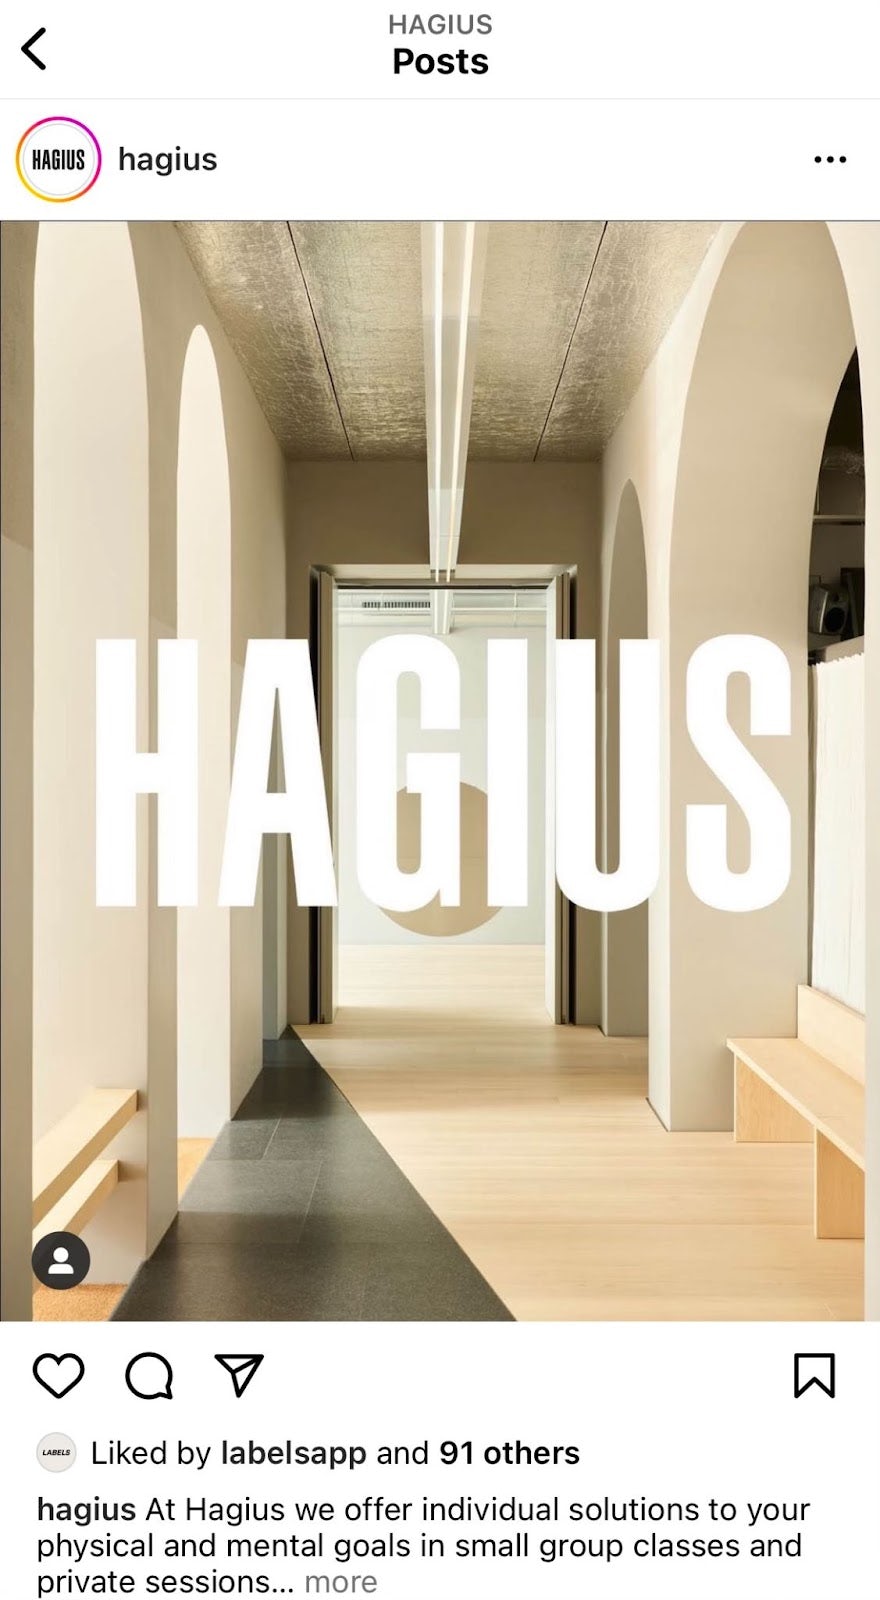 hagius logo and space